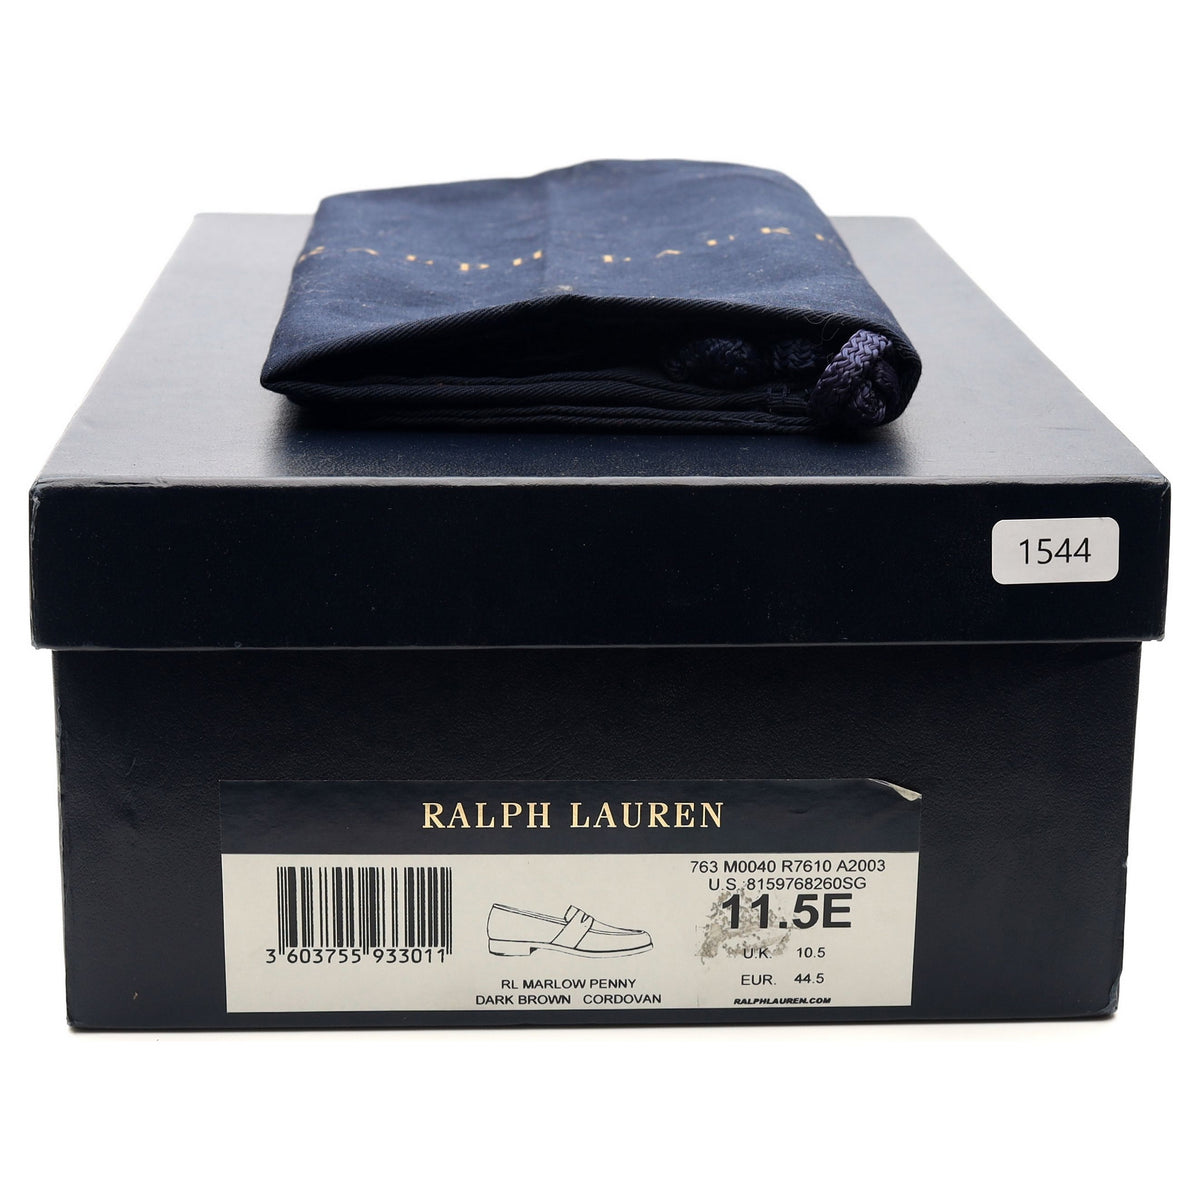 Ralph Lauren Marlow Brown Cordovan Loafers UK 10.5 G US 11.5 E